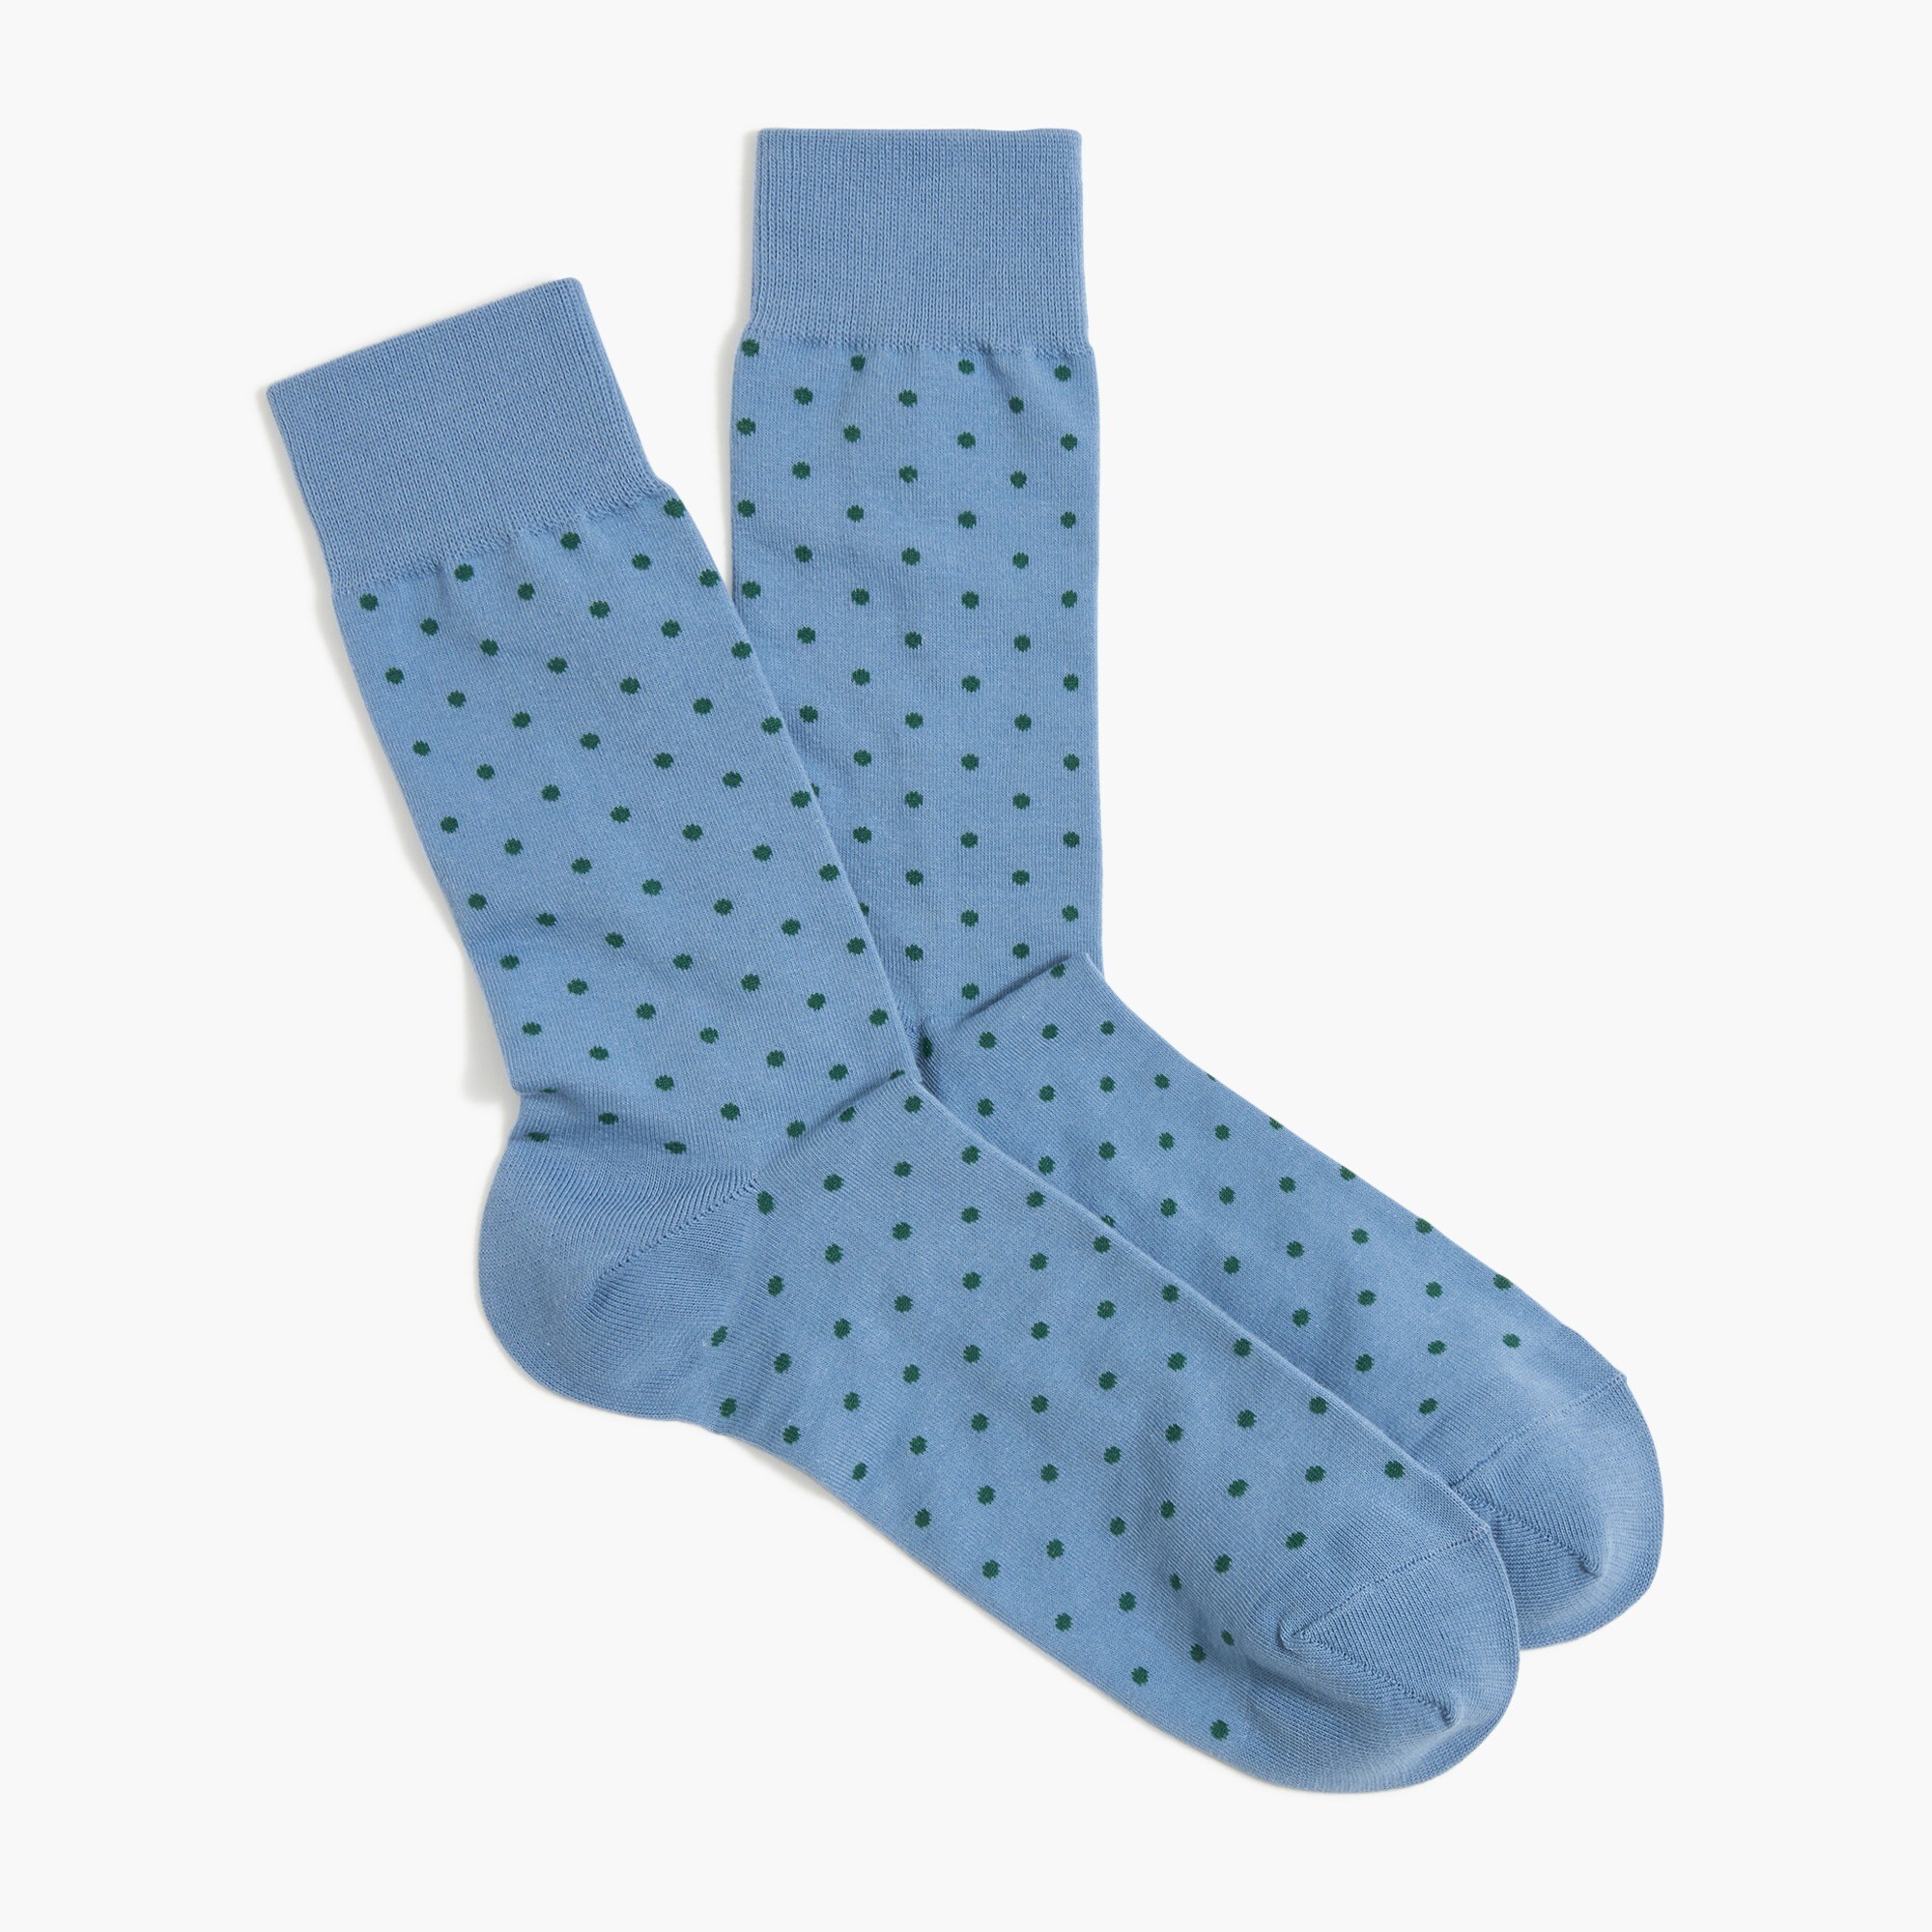 mens Polka-dot socks